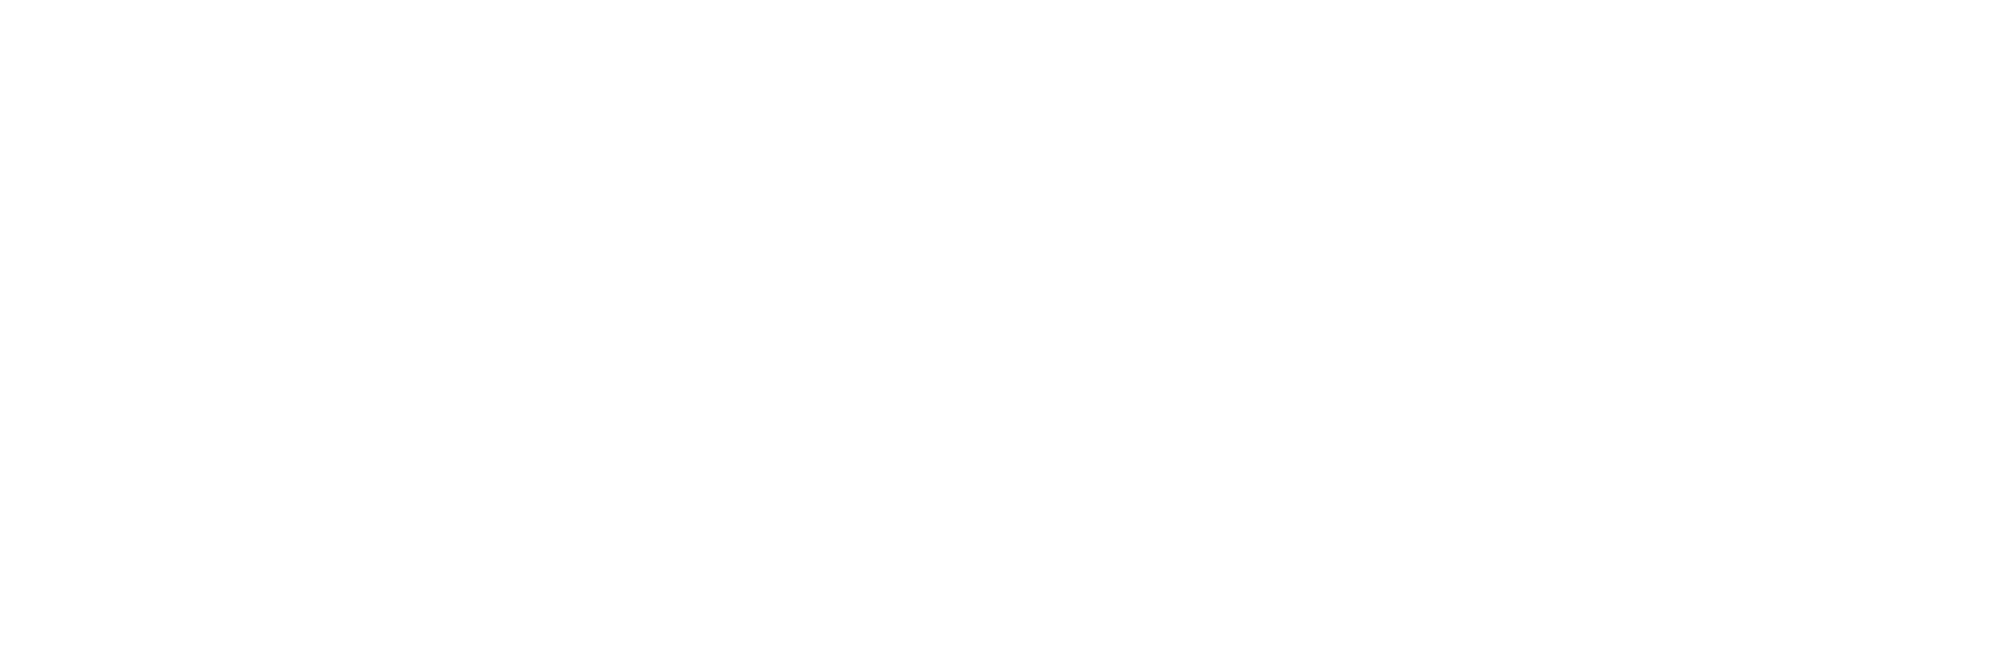 boehringer-logo